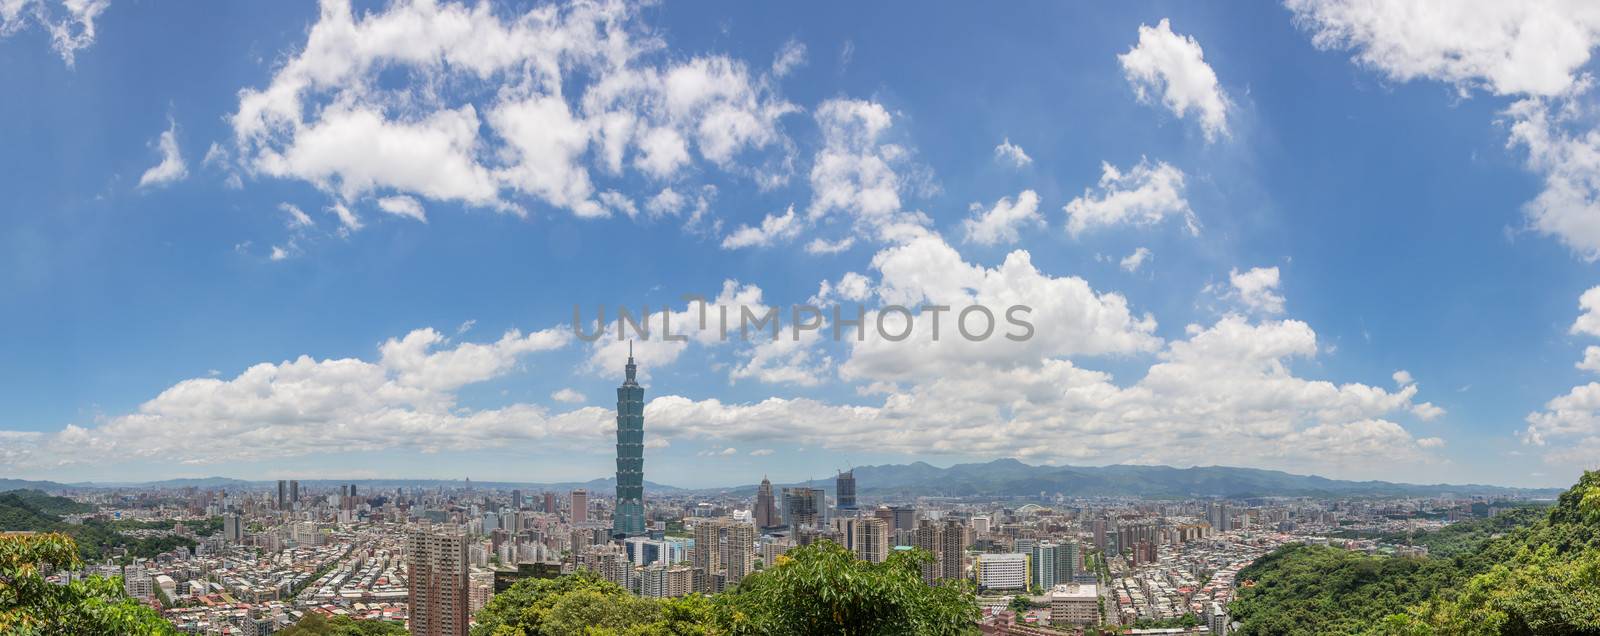 Taipei scenery by elwynn